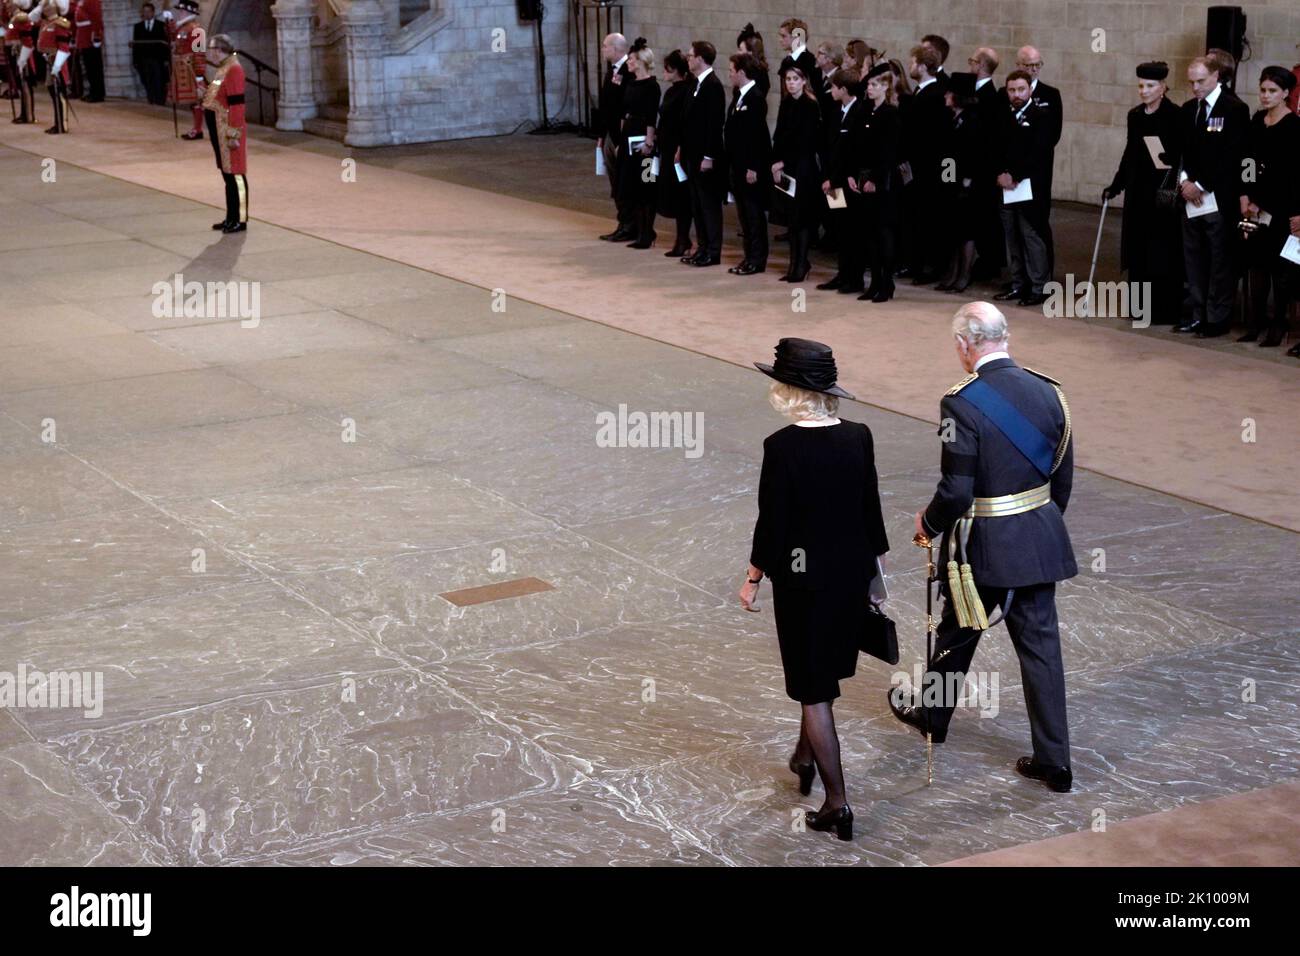 König Karl III. Und der Queen Consort kommen in der Westminster Hall in London an, wo Königin Elizabeth II. Vier volle Tage lang vor ihrer Beerdigung am Montag im Staat liegen wird. Bilddatum: Mittwoch, 14. September 2022. Stockfoto